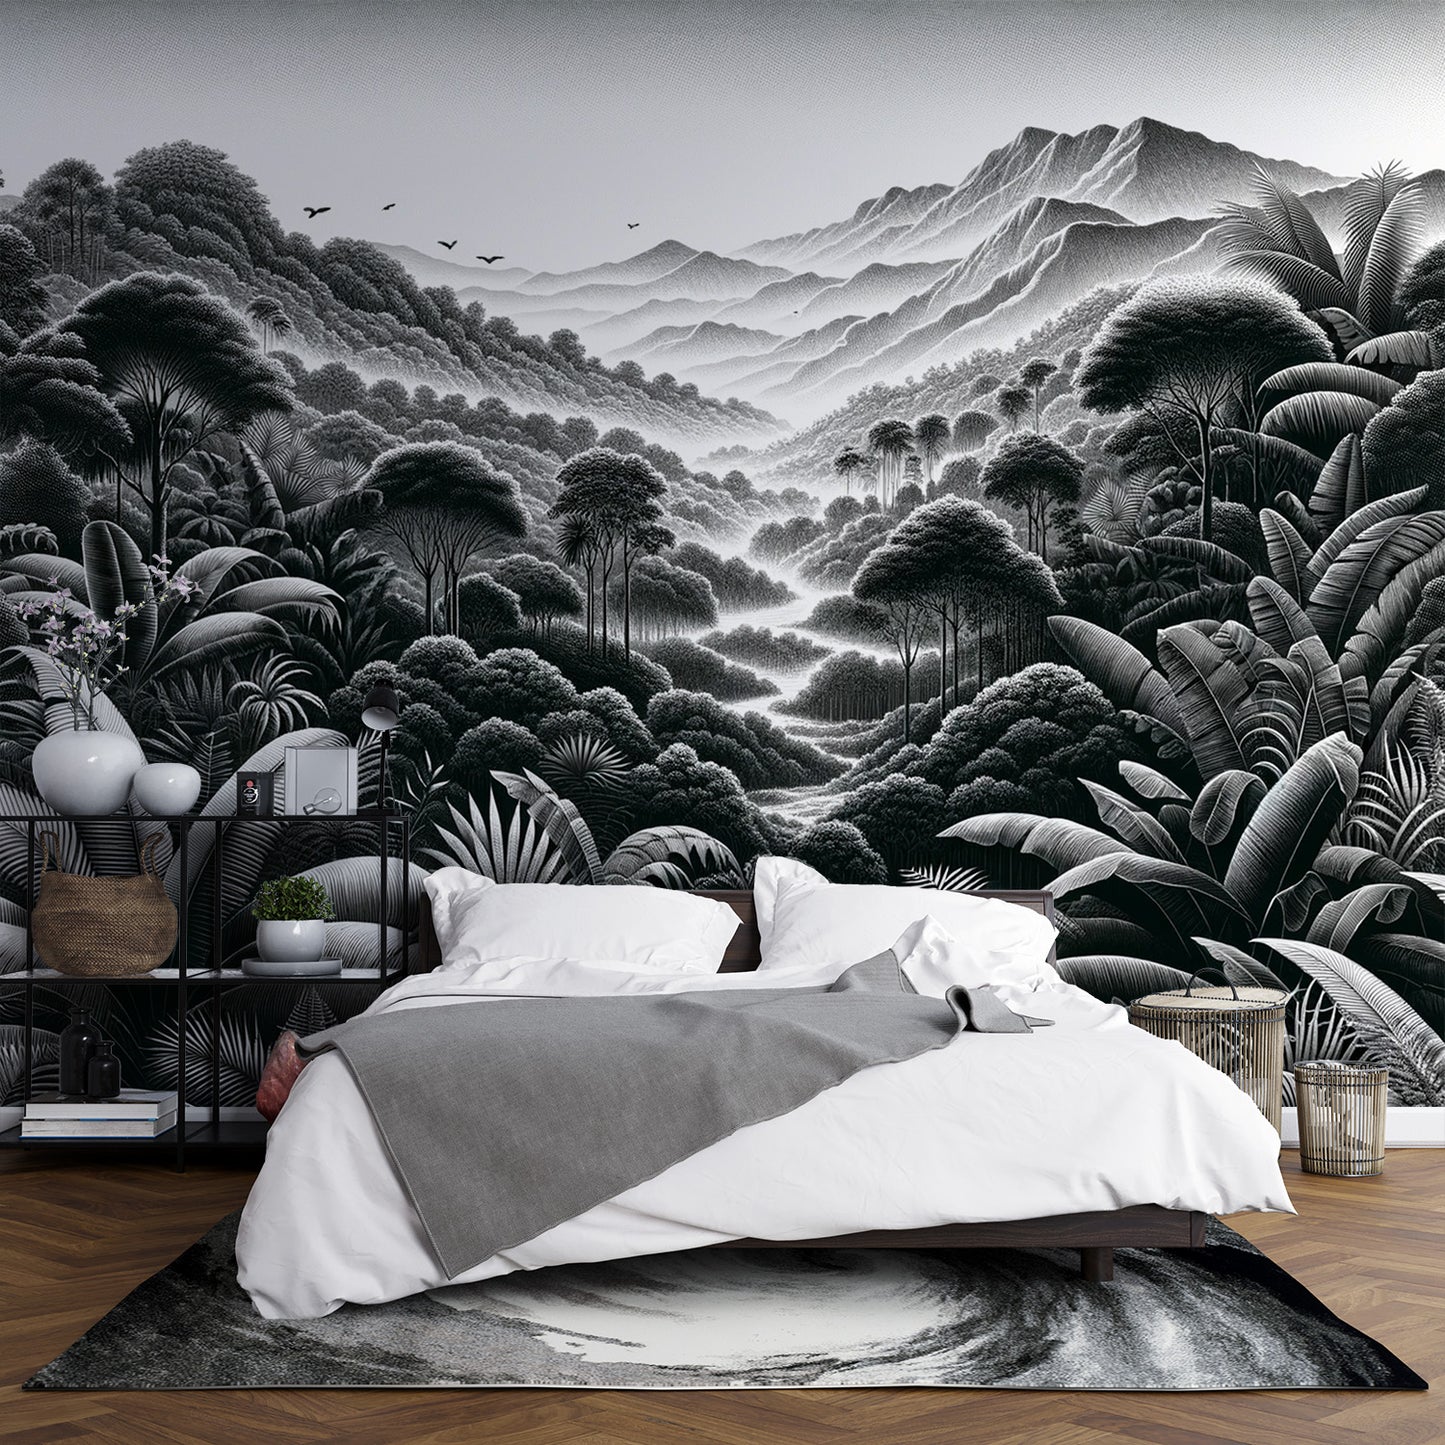 Papier peint jungle noir et blanc | Relief montagneux et végétal